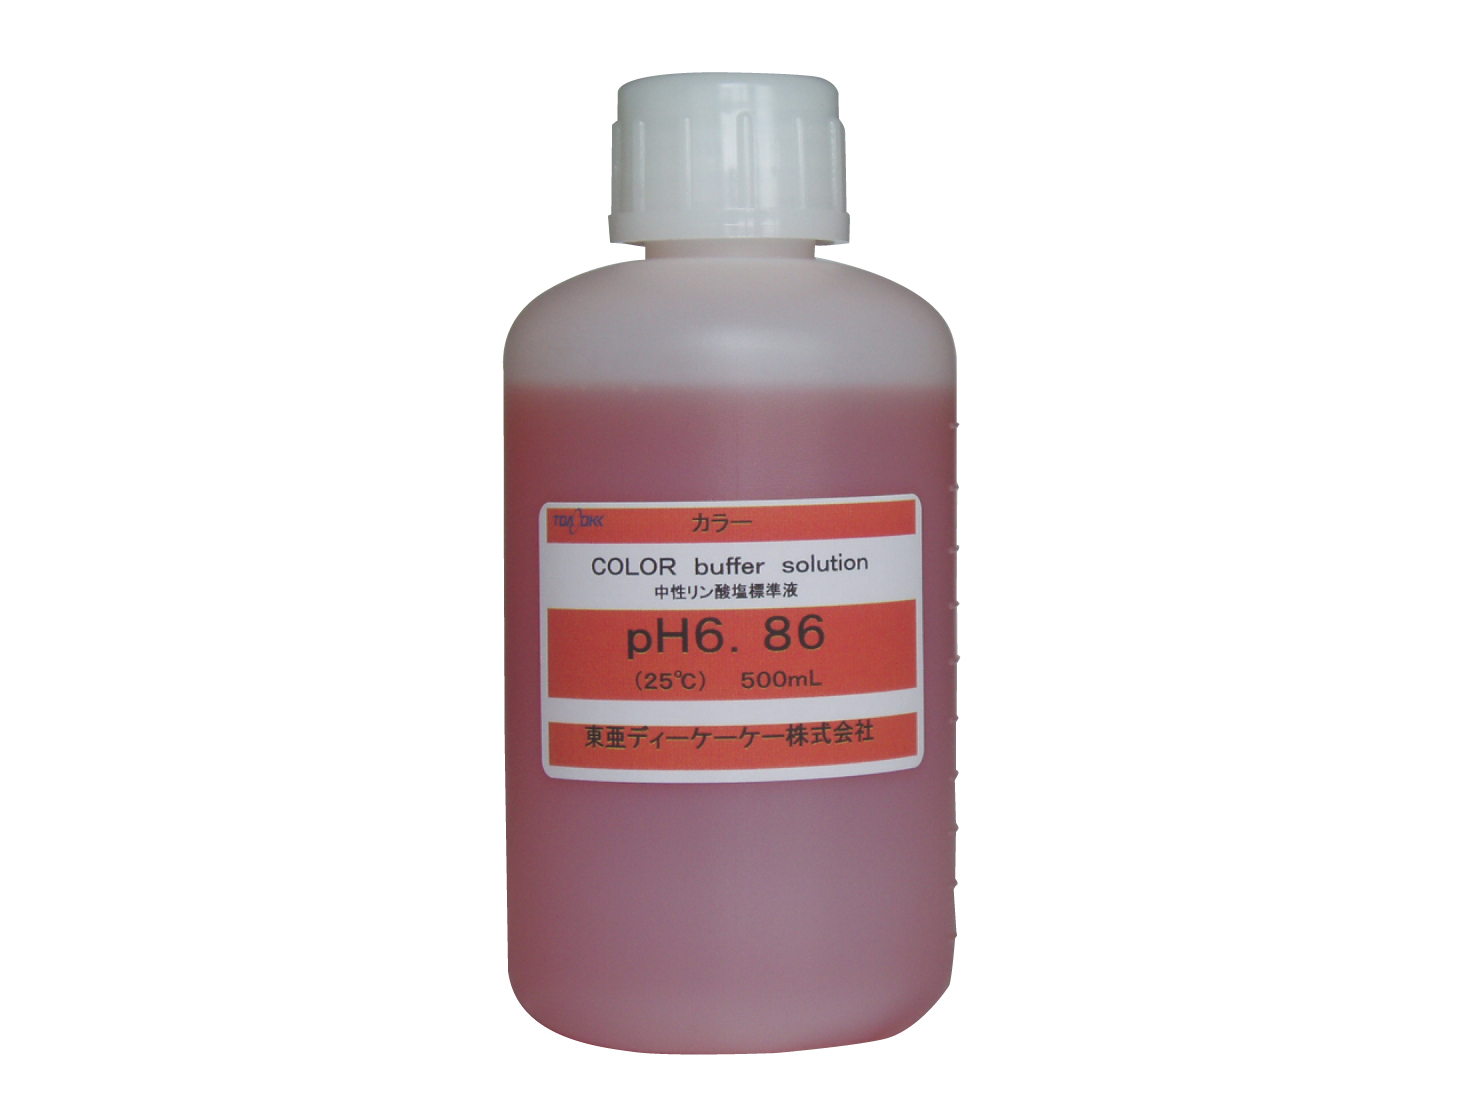 カラーpH標準液 pH6.86CL 中性りん酸塩標準 500mL